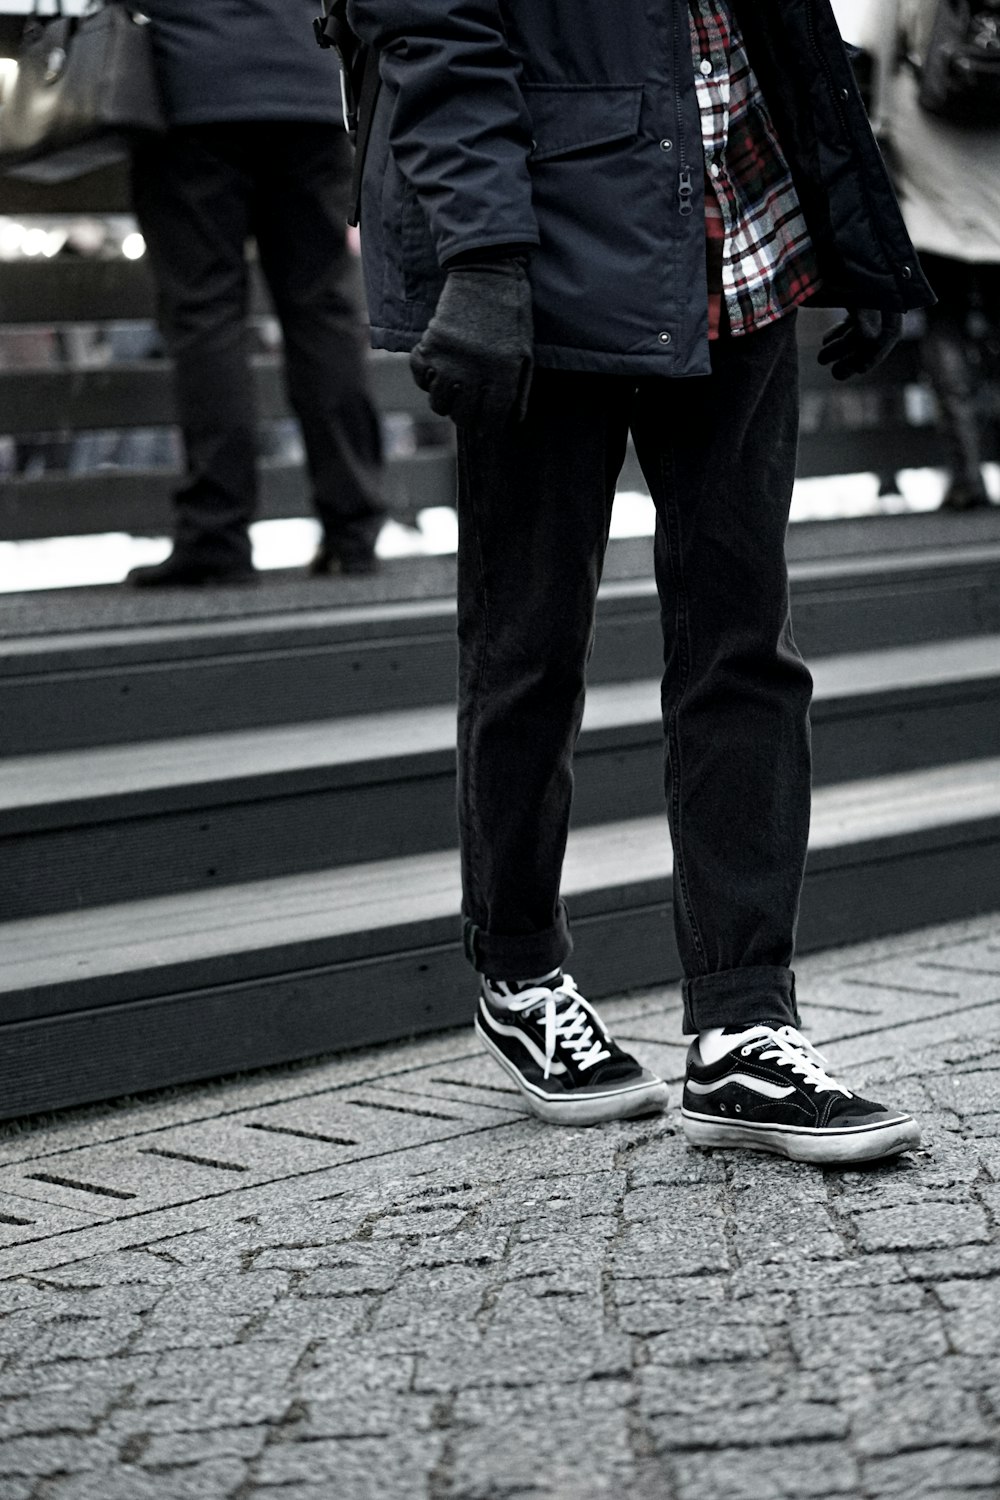 Man Wearing Black Vans Sneakers Photo Free Apparel Image On Unsplash